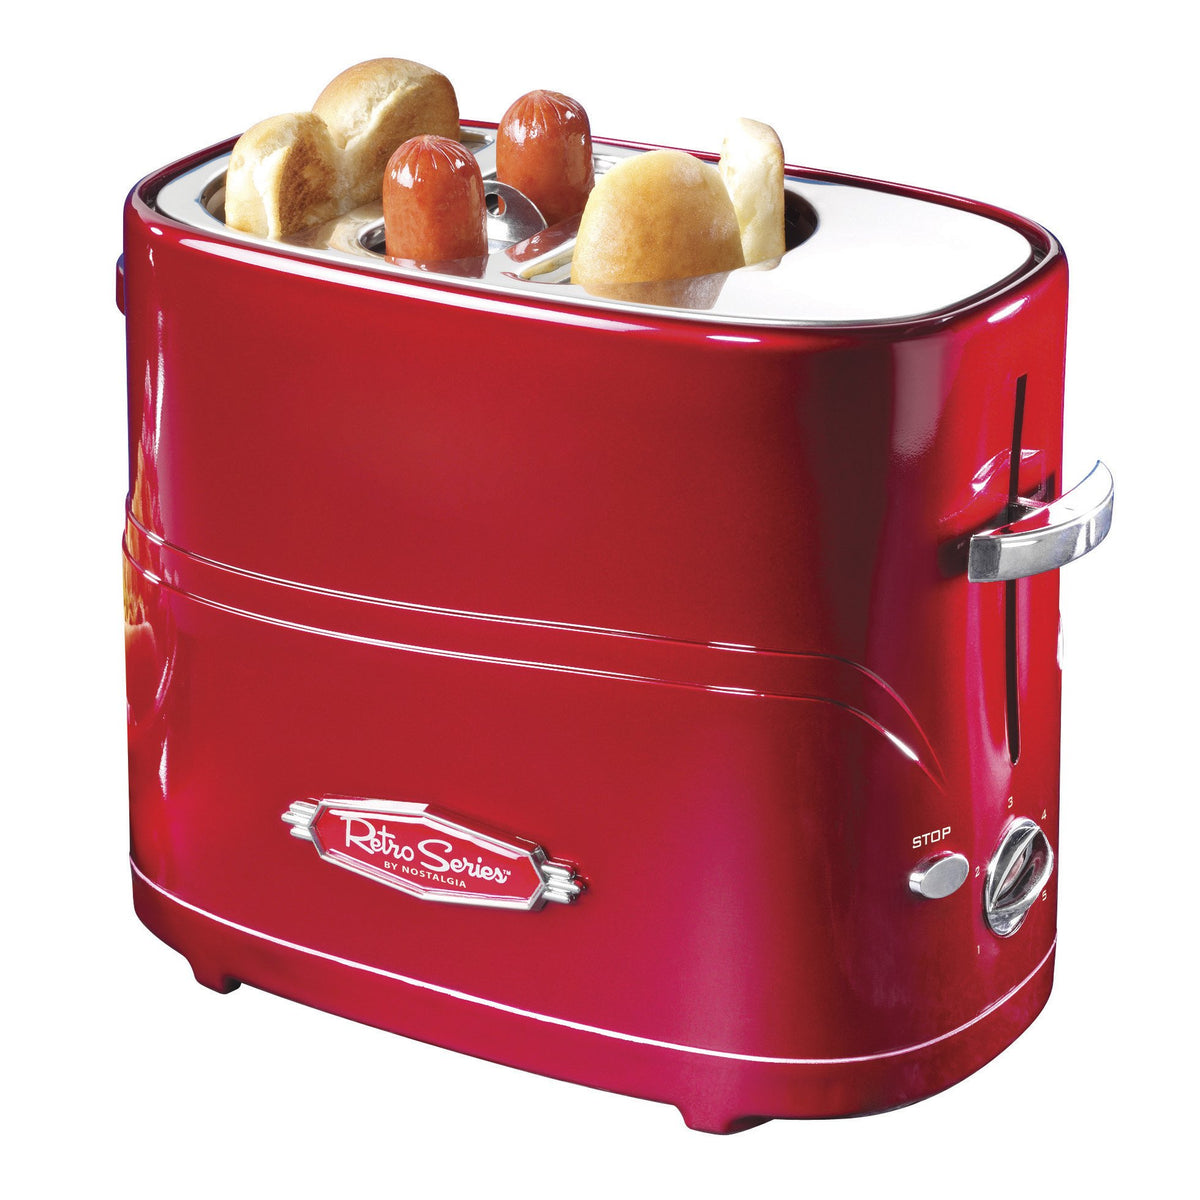  Nostalgia 4 Slot Hot Dog and Bun Toaster with Mini